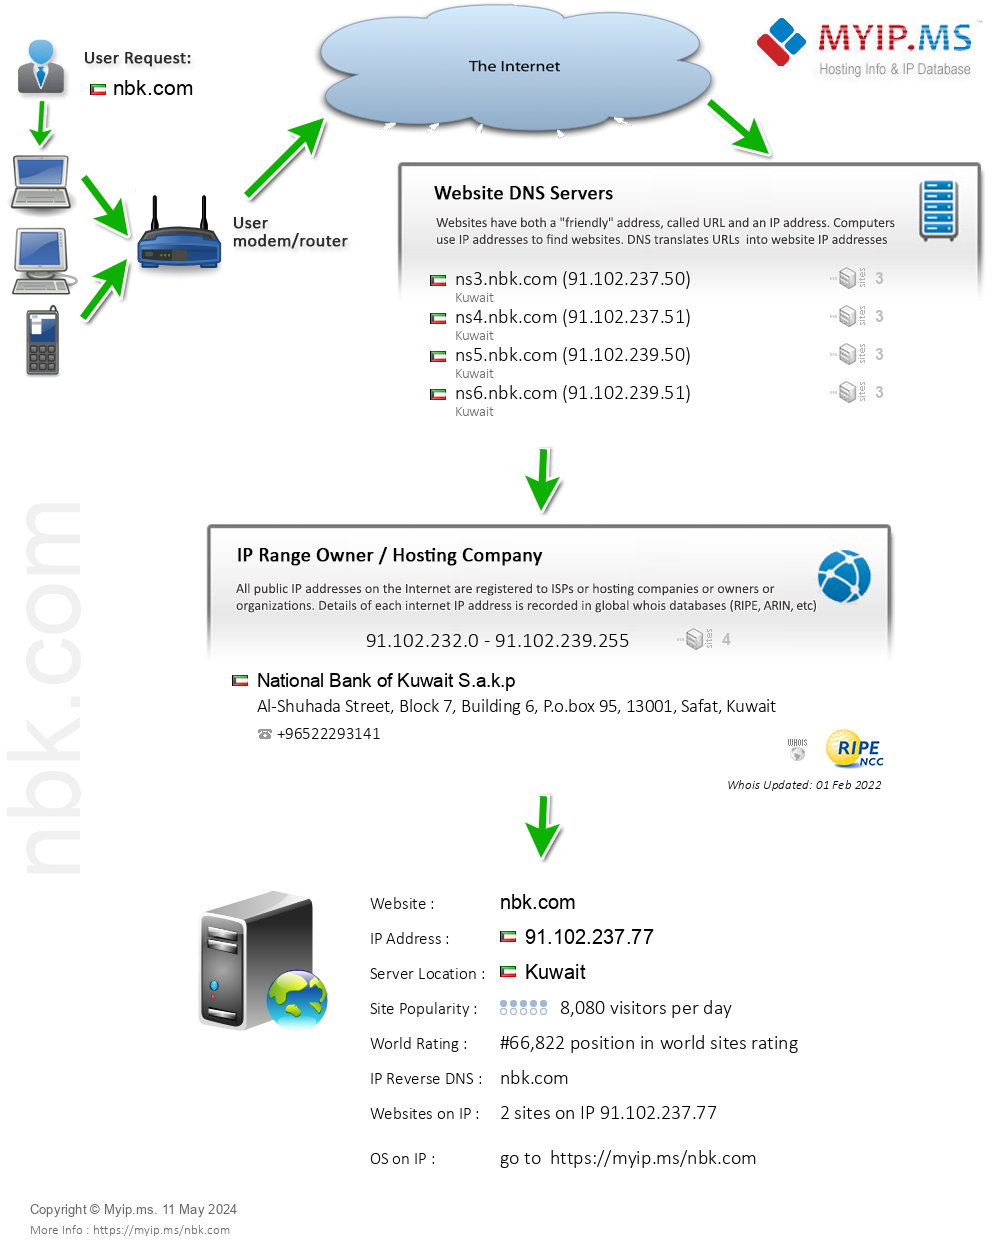 Nbk.com - Website Hosting Visual IP Diagram